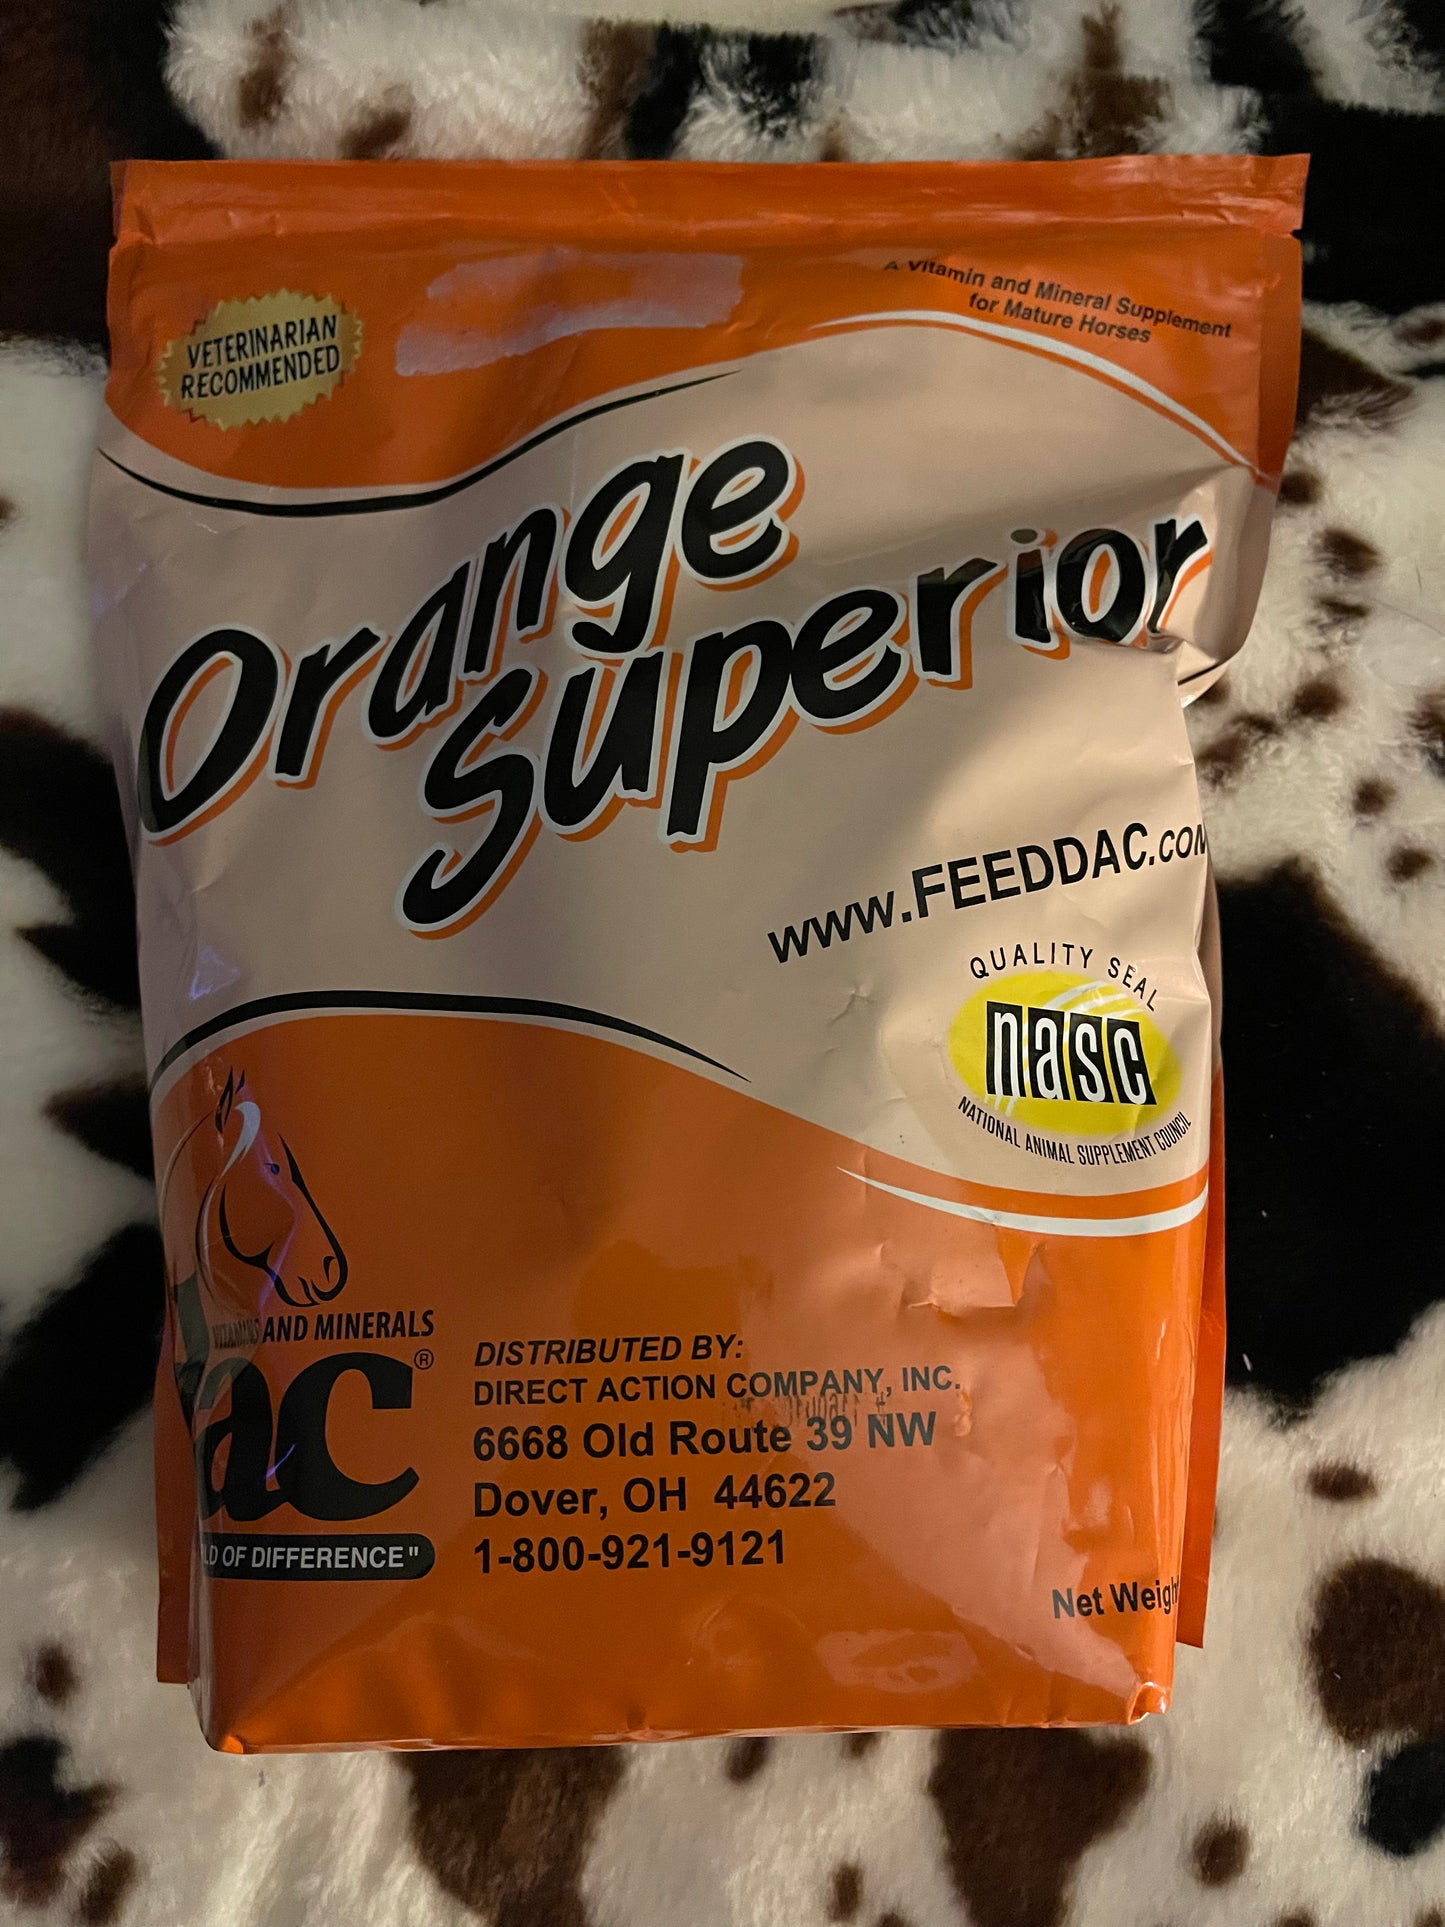 Orange superior